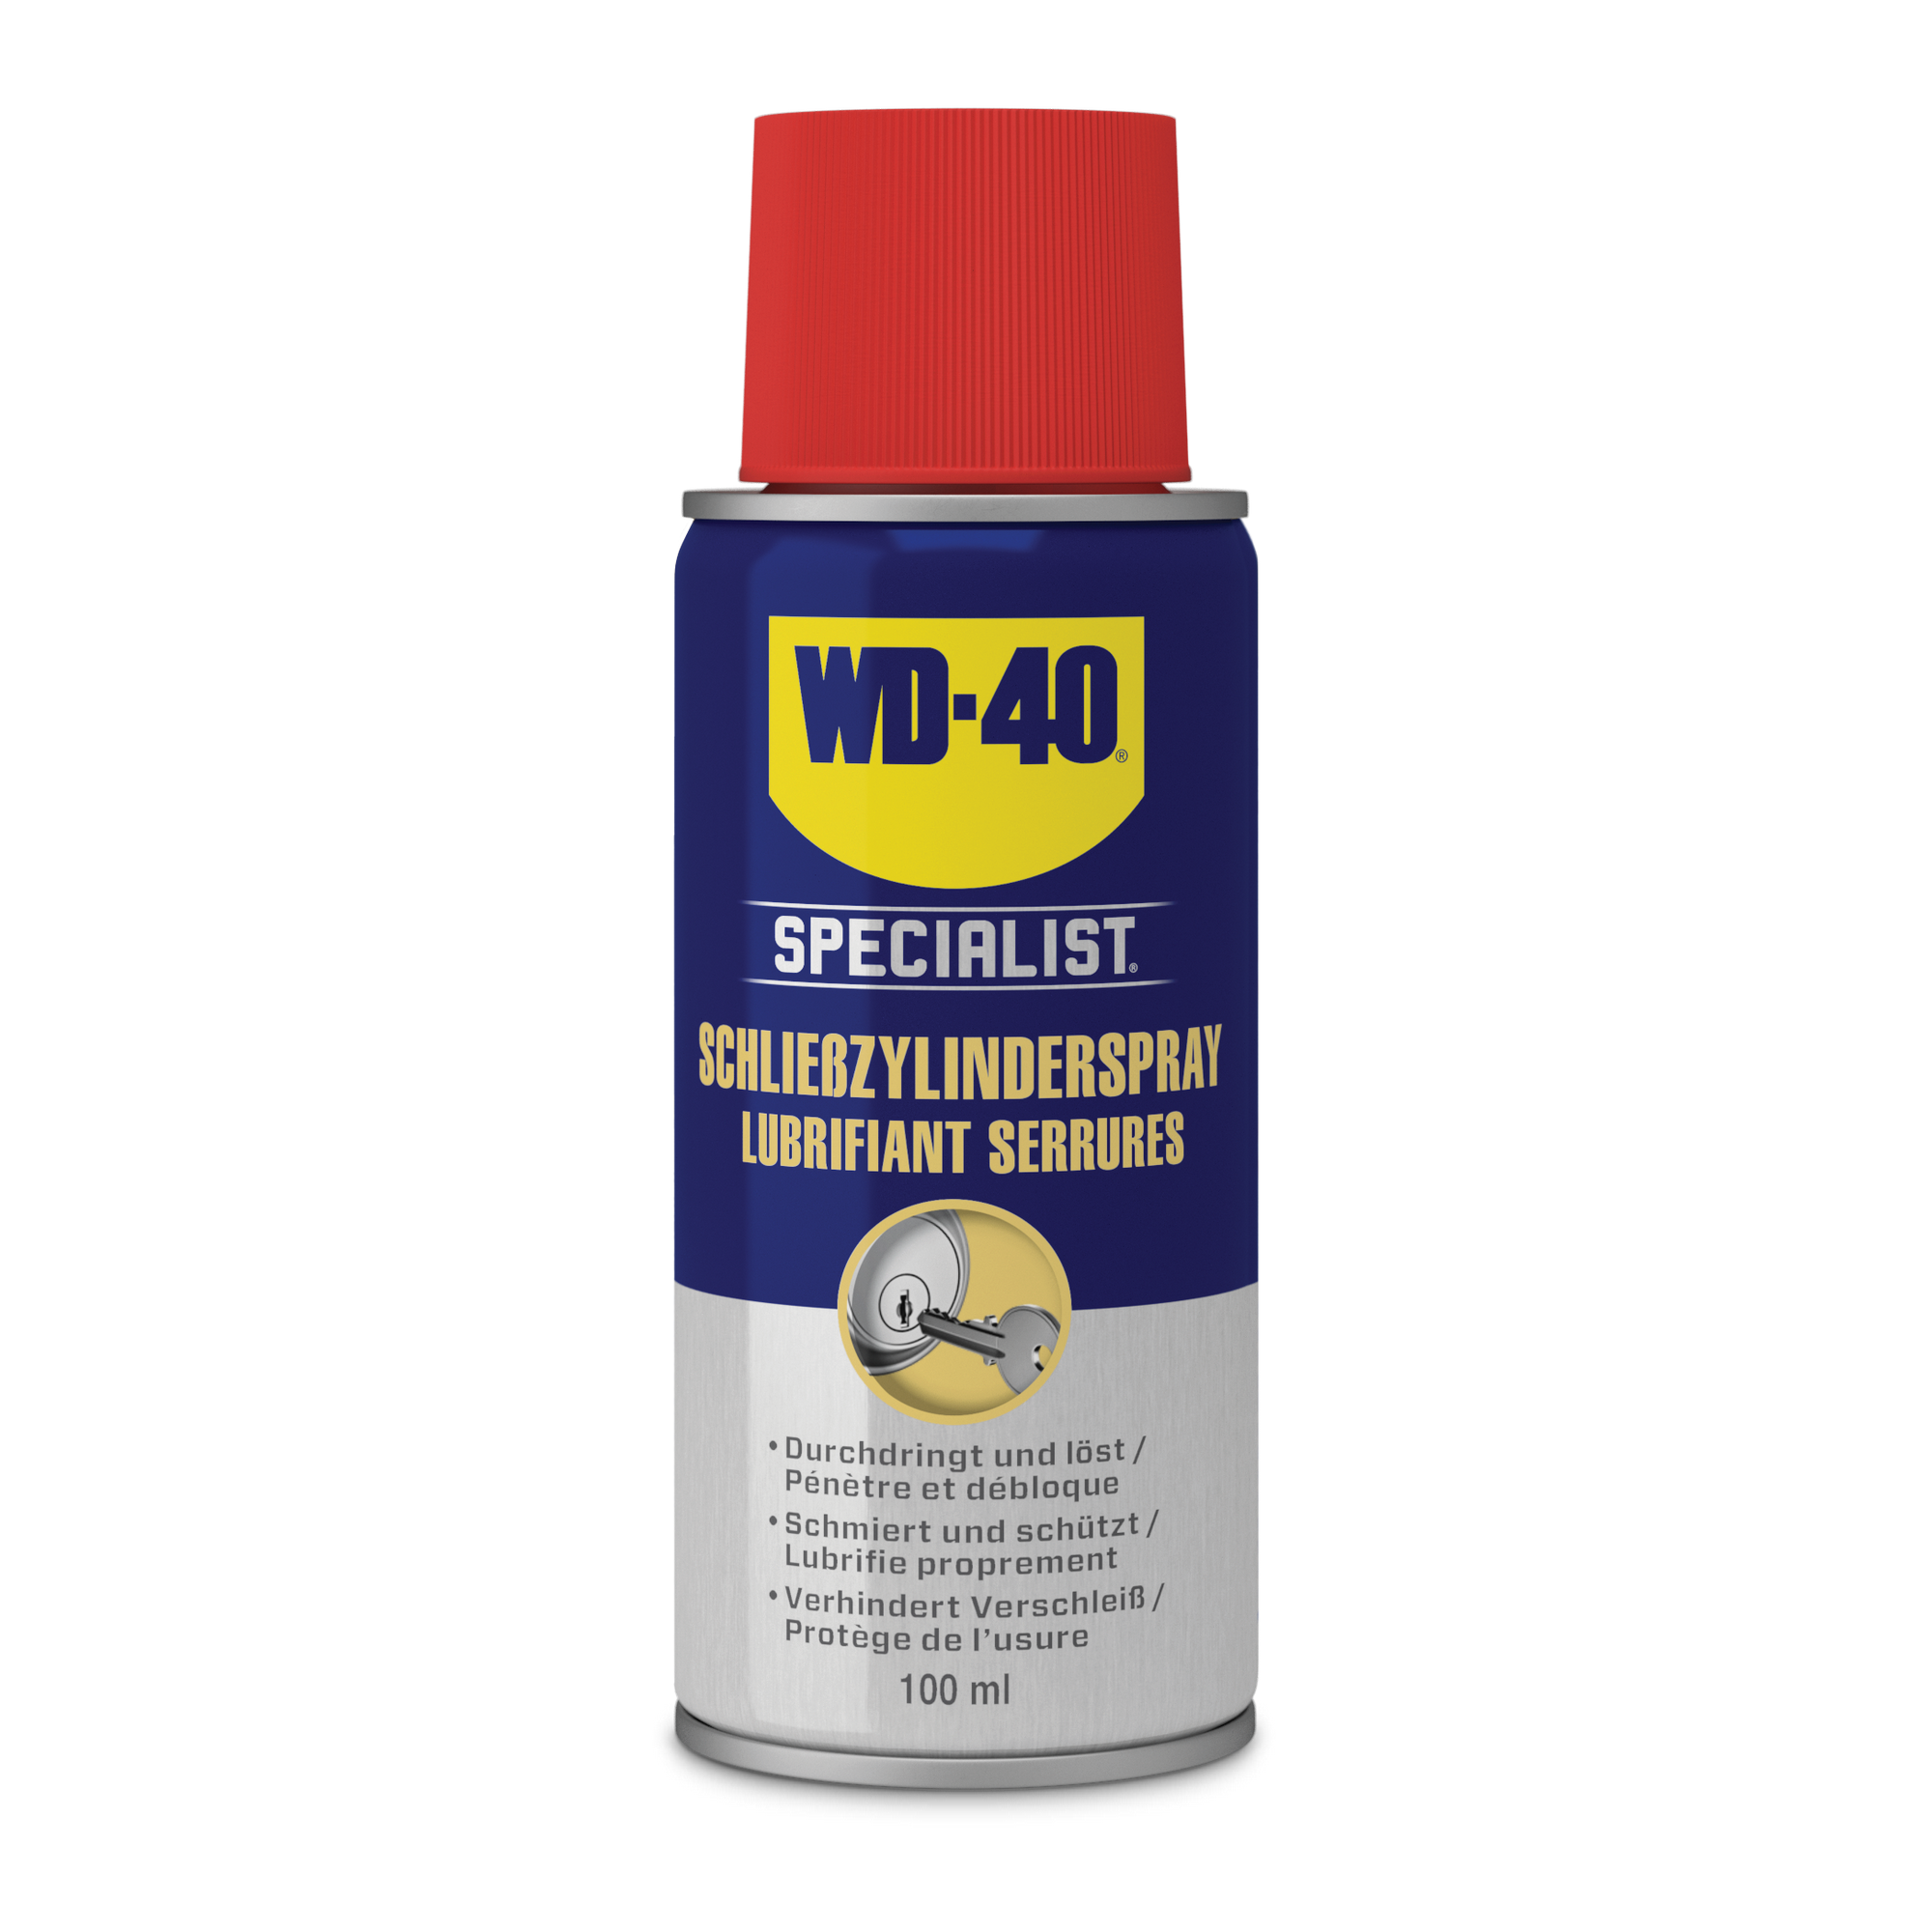 Schließzylinderspray 'Specialist' 100 ml + product picture